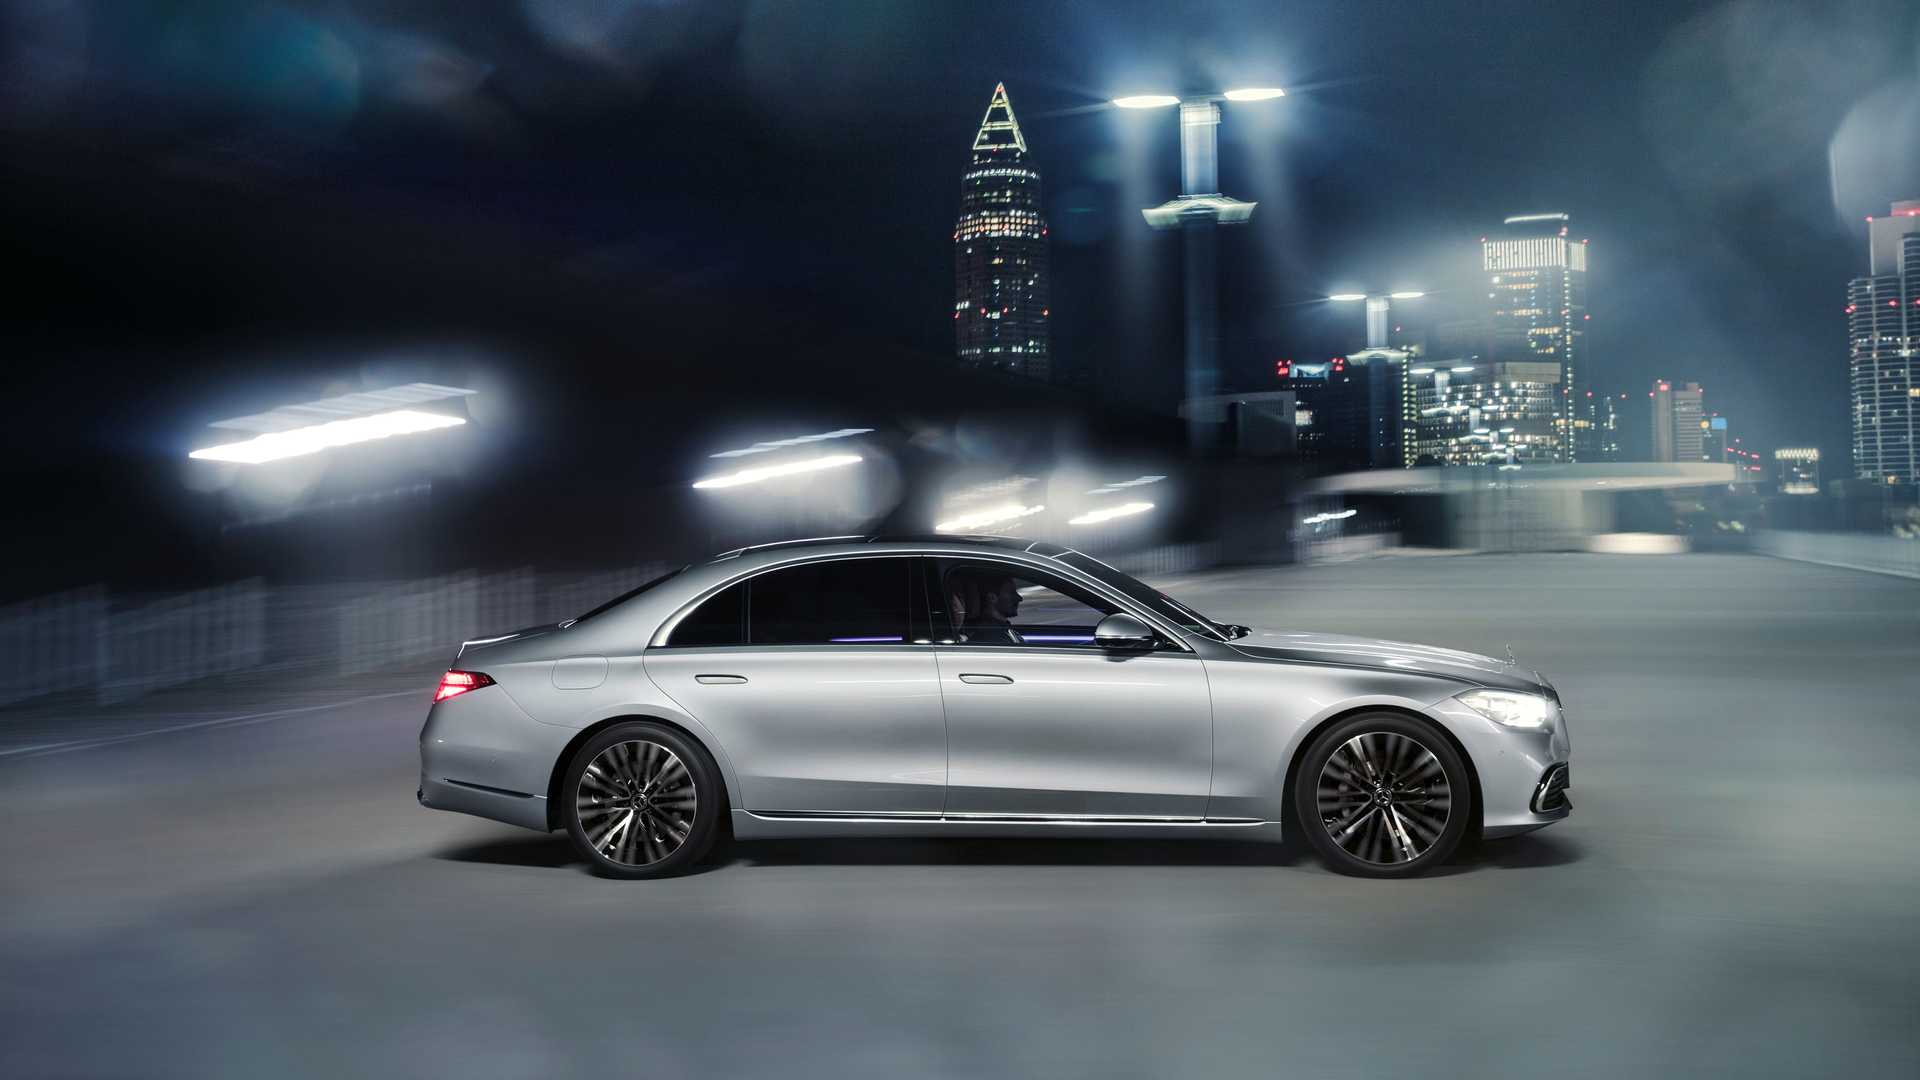 نمای جانبی مرسدس بنز کلاس اس مدل 2021 / 2021 Mercedes S-Class در خیابان در شب